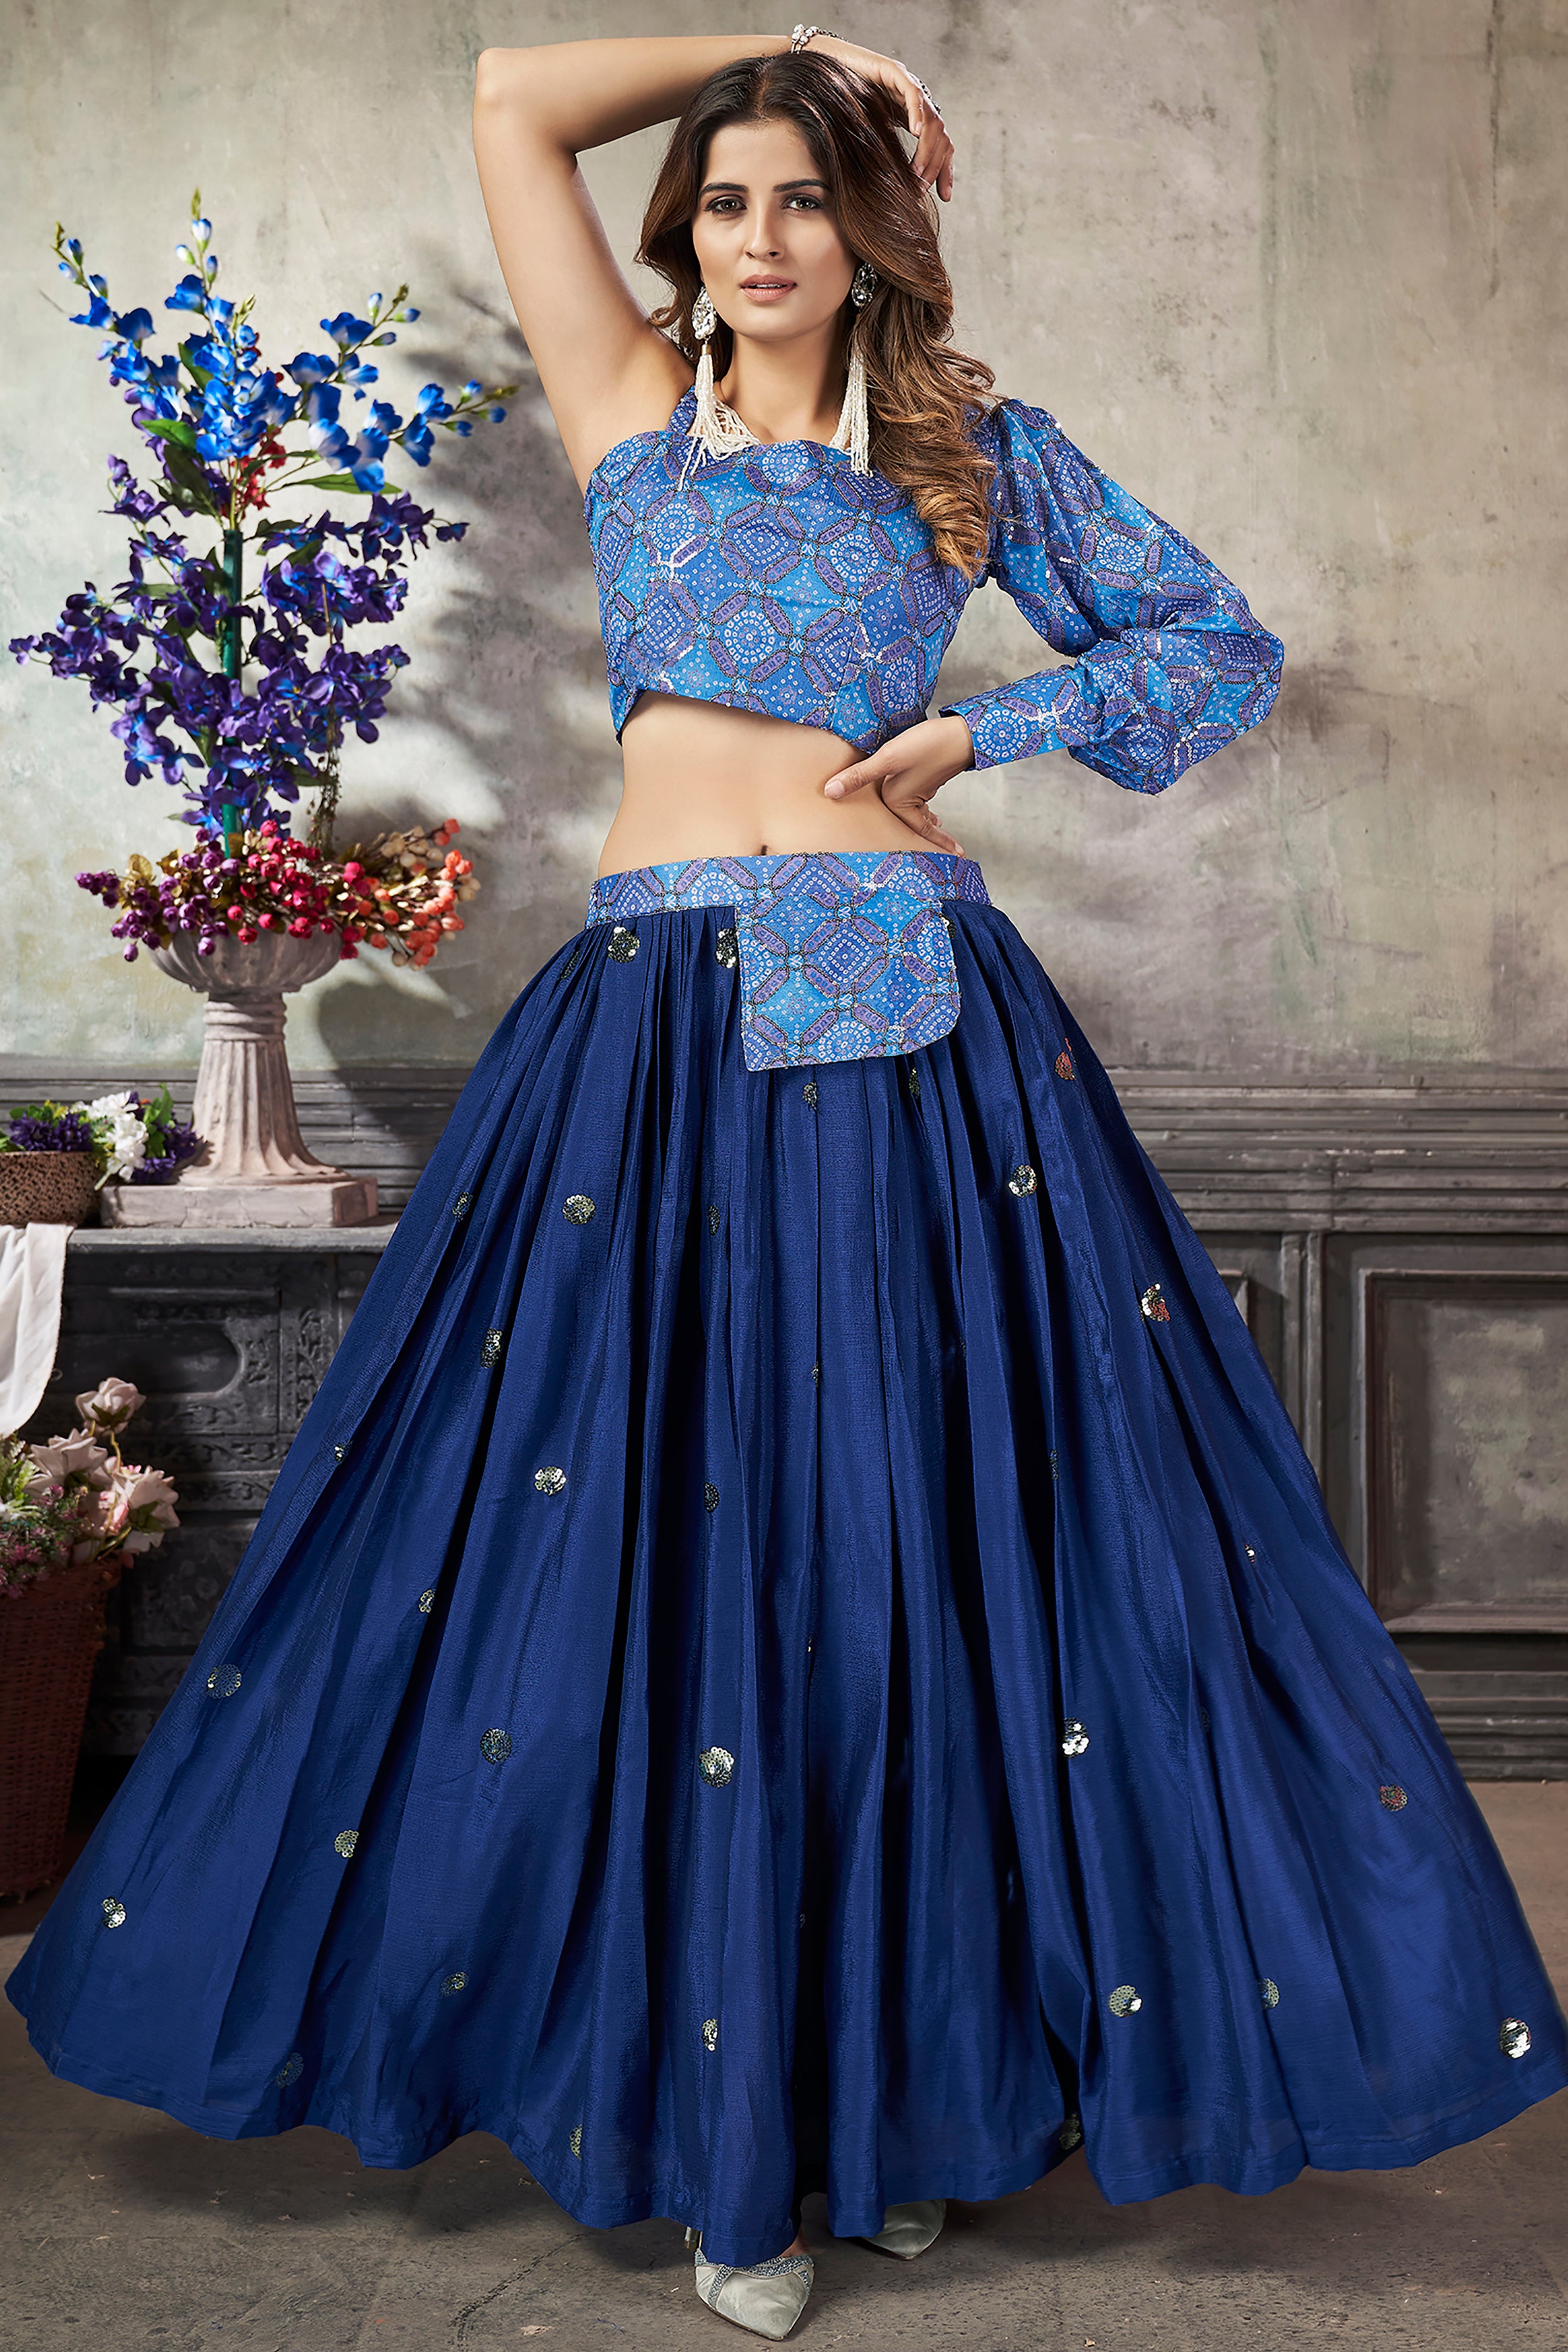 Awesome Blue colour Lehenga Choli Designs for girls/ Engagement wedding  special Royal Blue Lehenga - YouTube